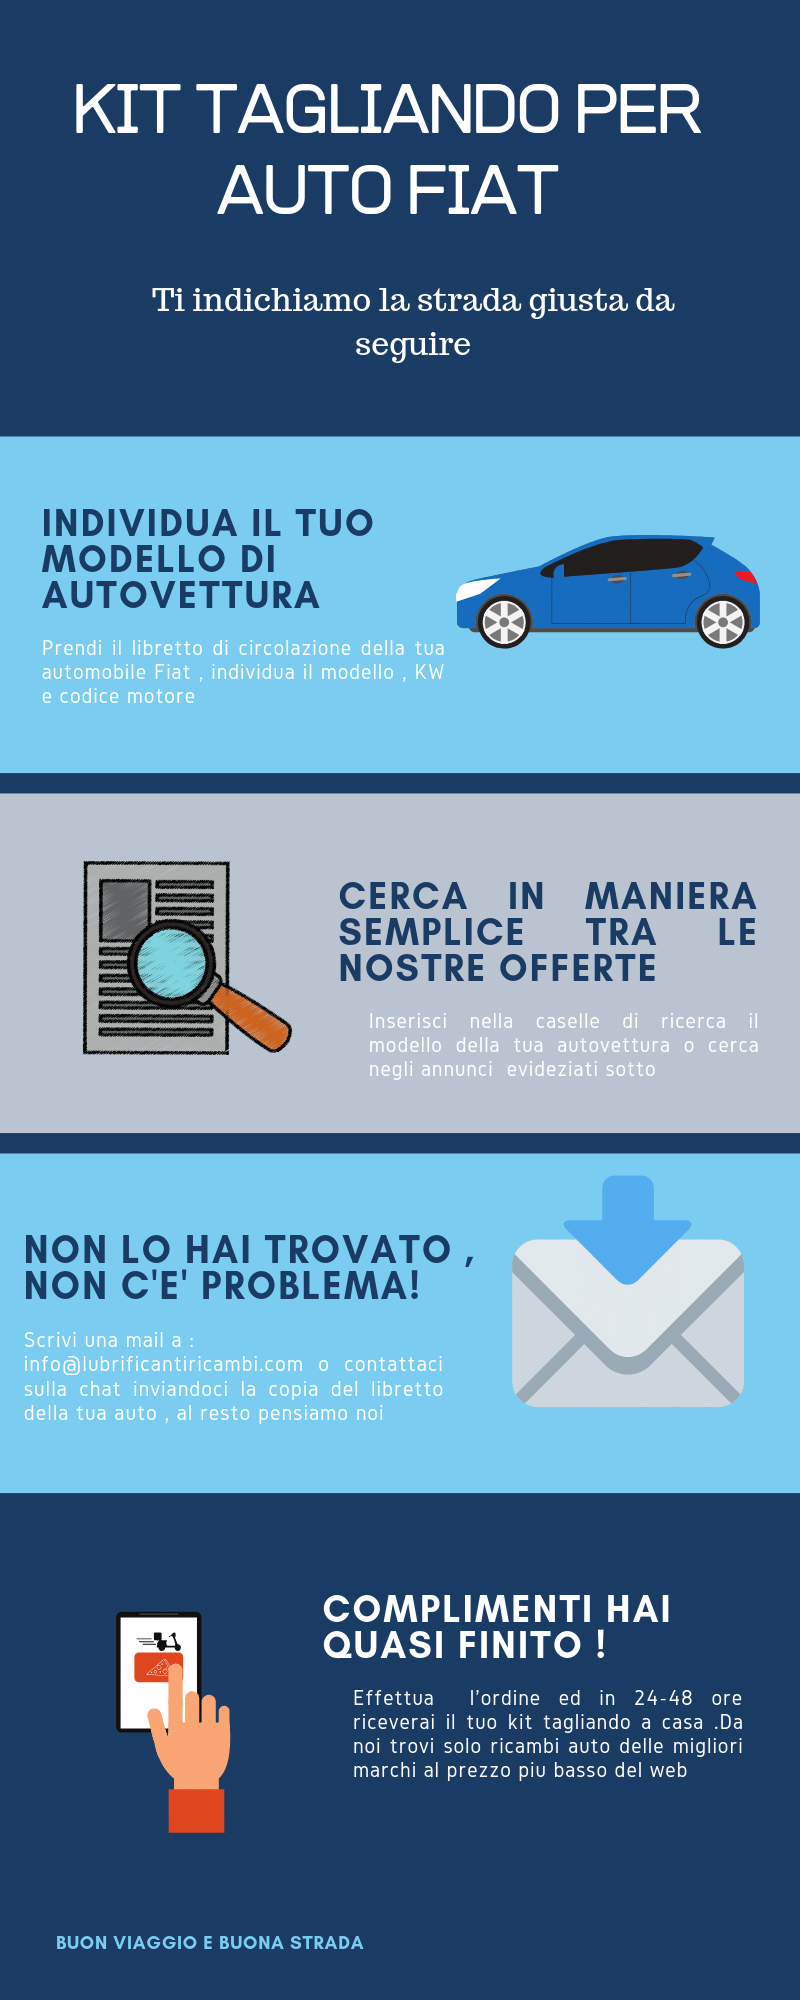 Kit de servicio para automóviles Fiat